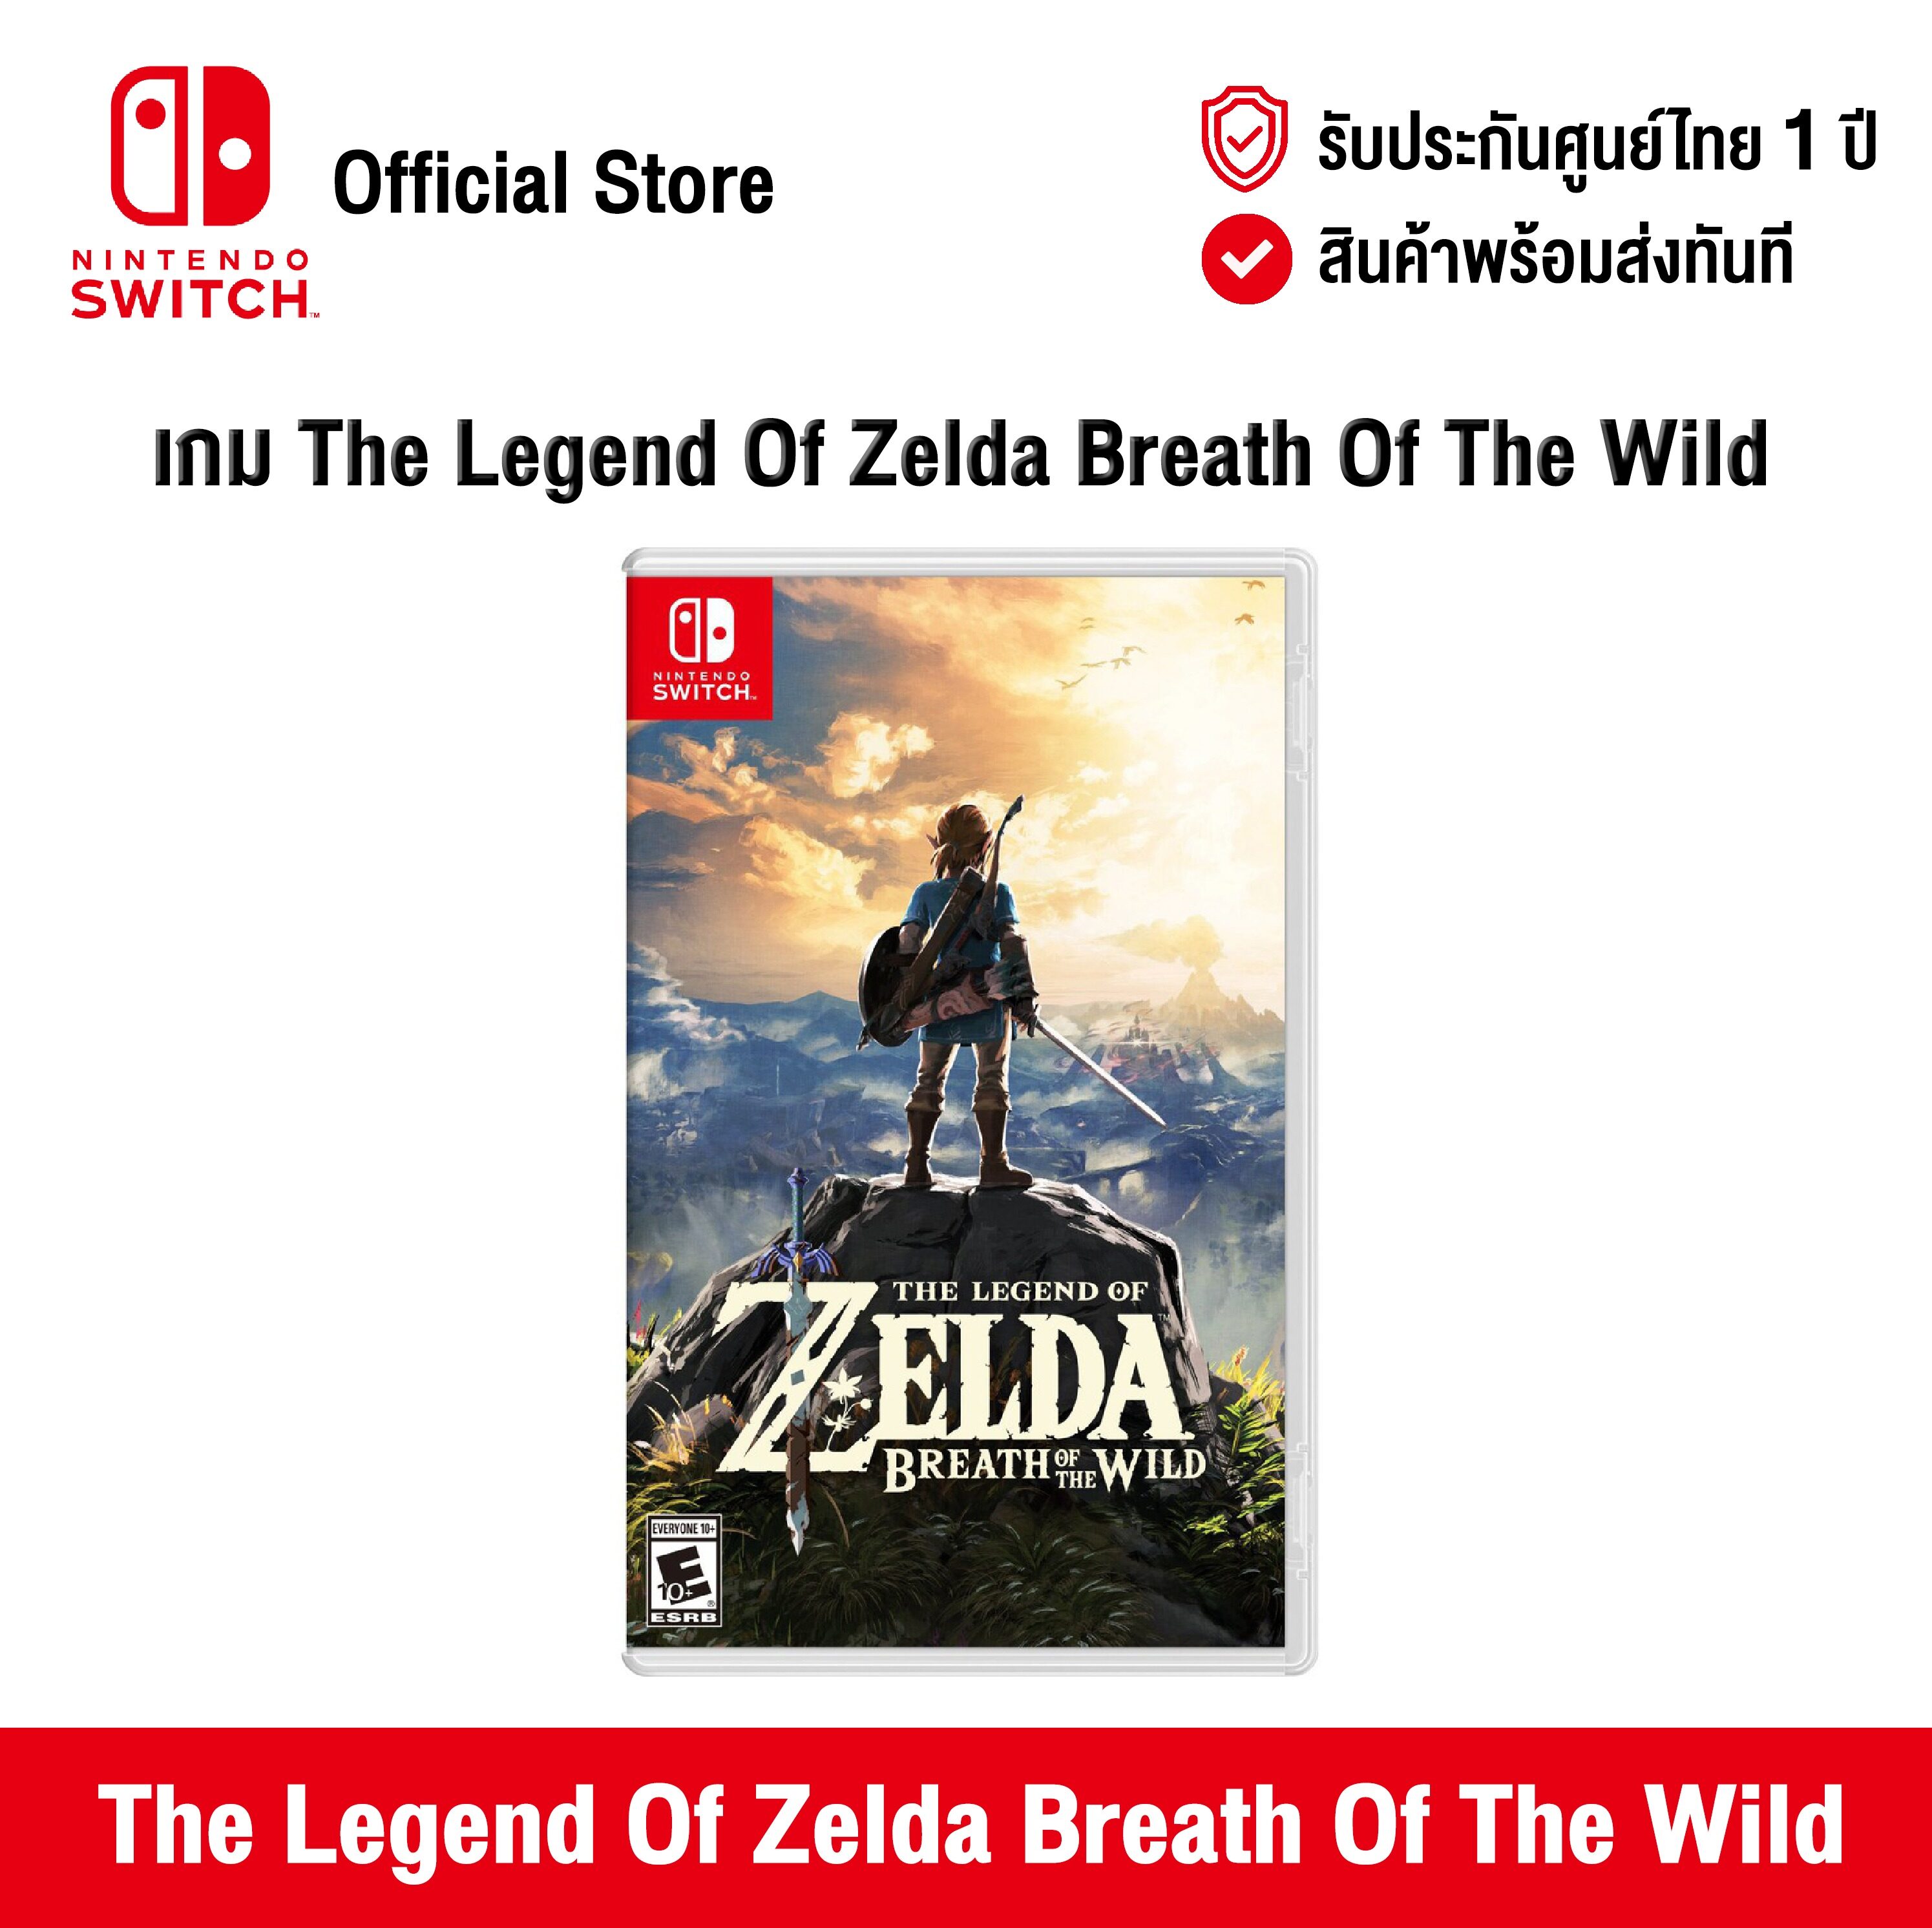 [ศูนย์ไทย] Nintendo Switch : The Legend Of Zelda Breath Of The Wild (EN) นินเทนโด้ สวิตช์ แผ่นเกม The Legend Of Zelda Breath Of The Wild